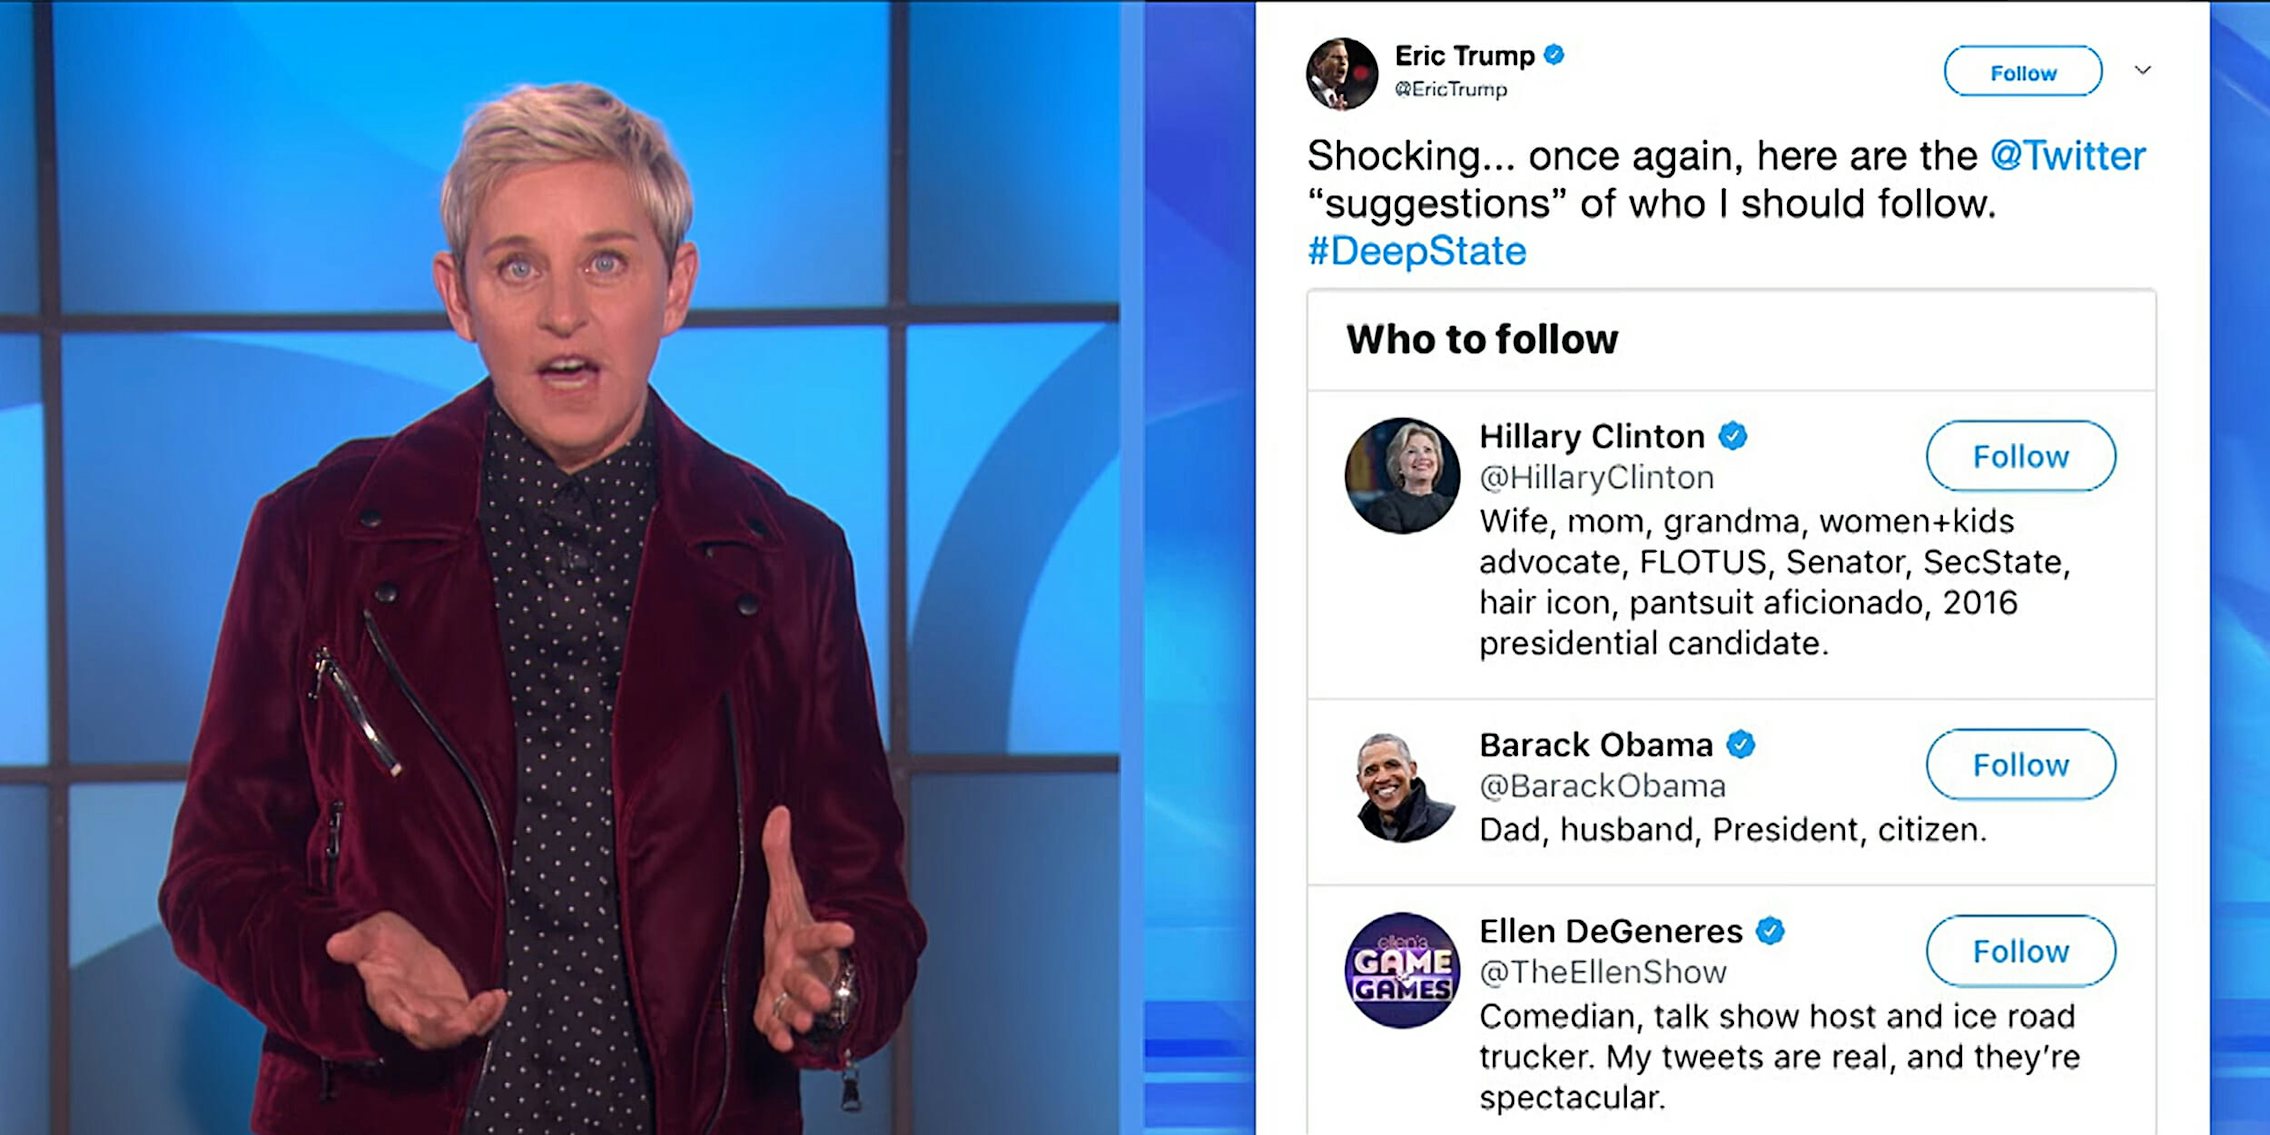 Ellen DeGeneres talking about Eric Trump's 'Deep State' tweet